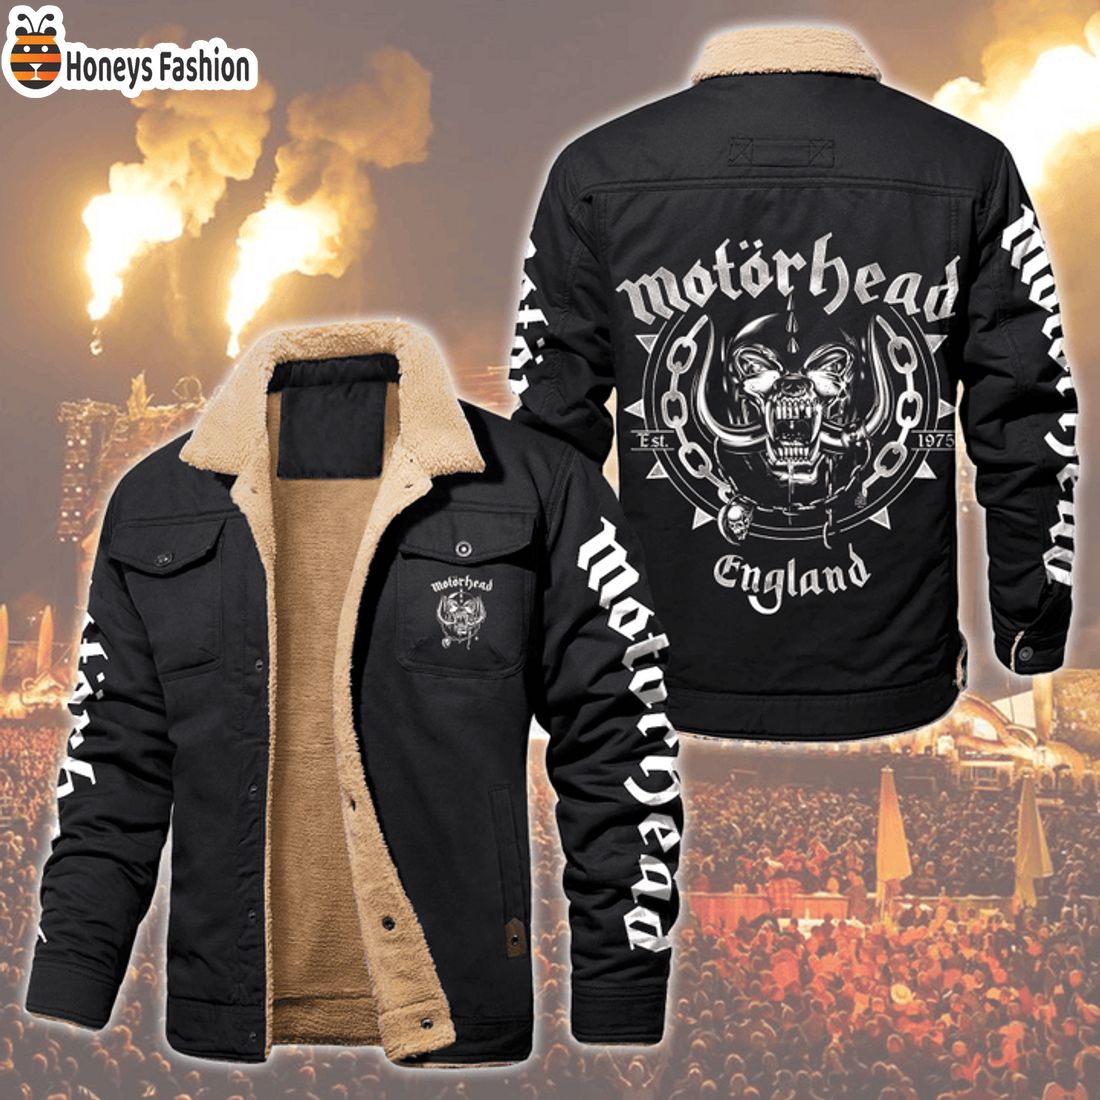 HOT Motorhead England Fleece Leather Jacket